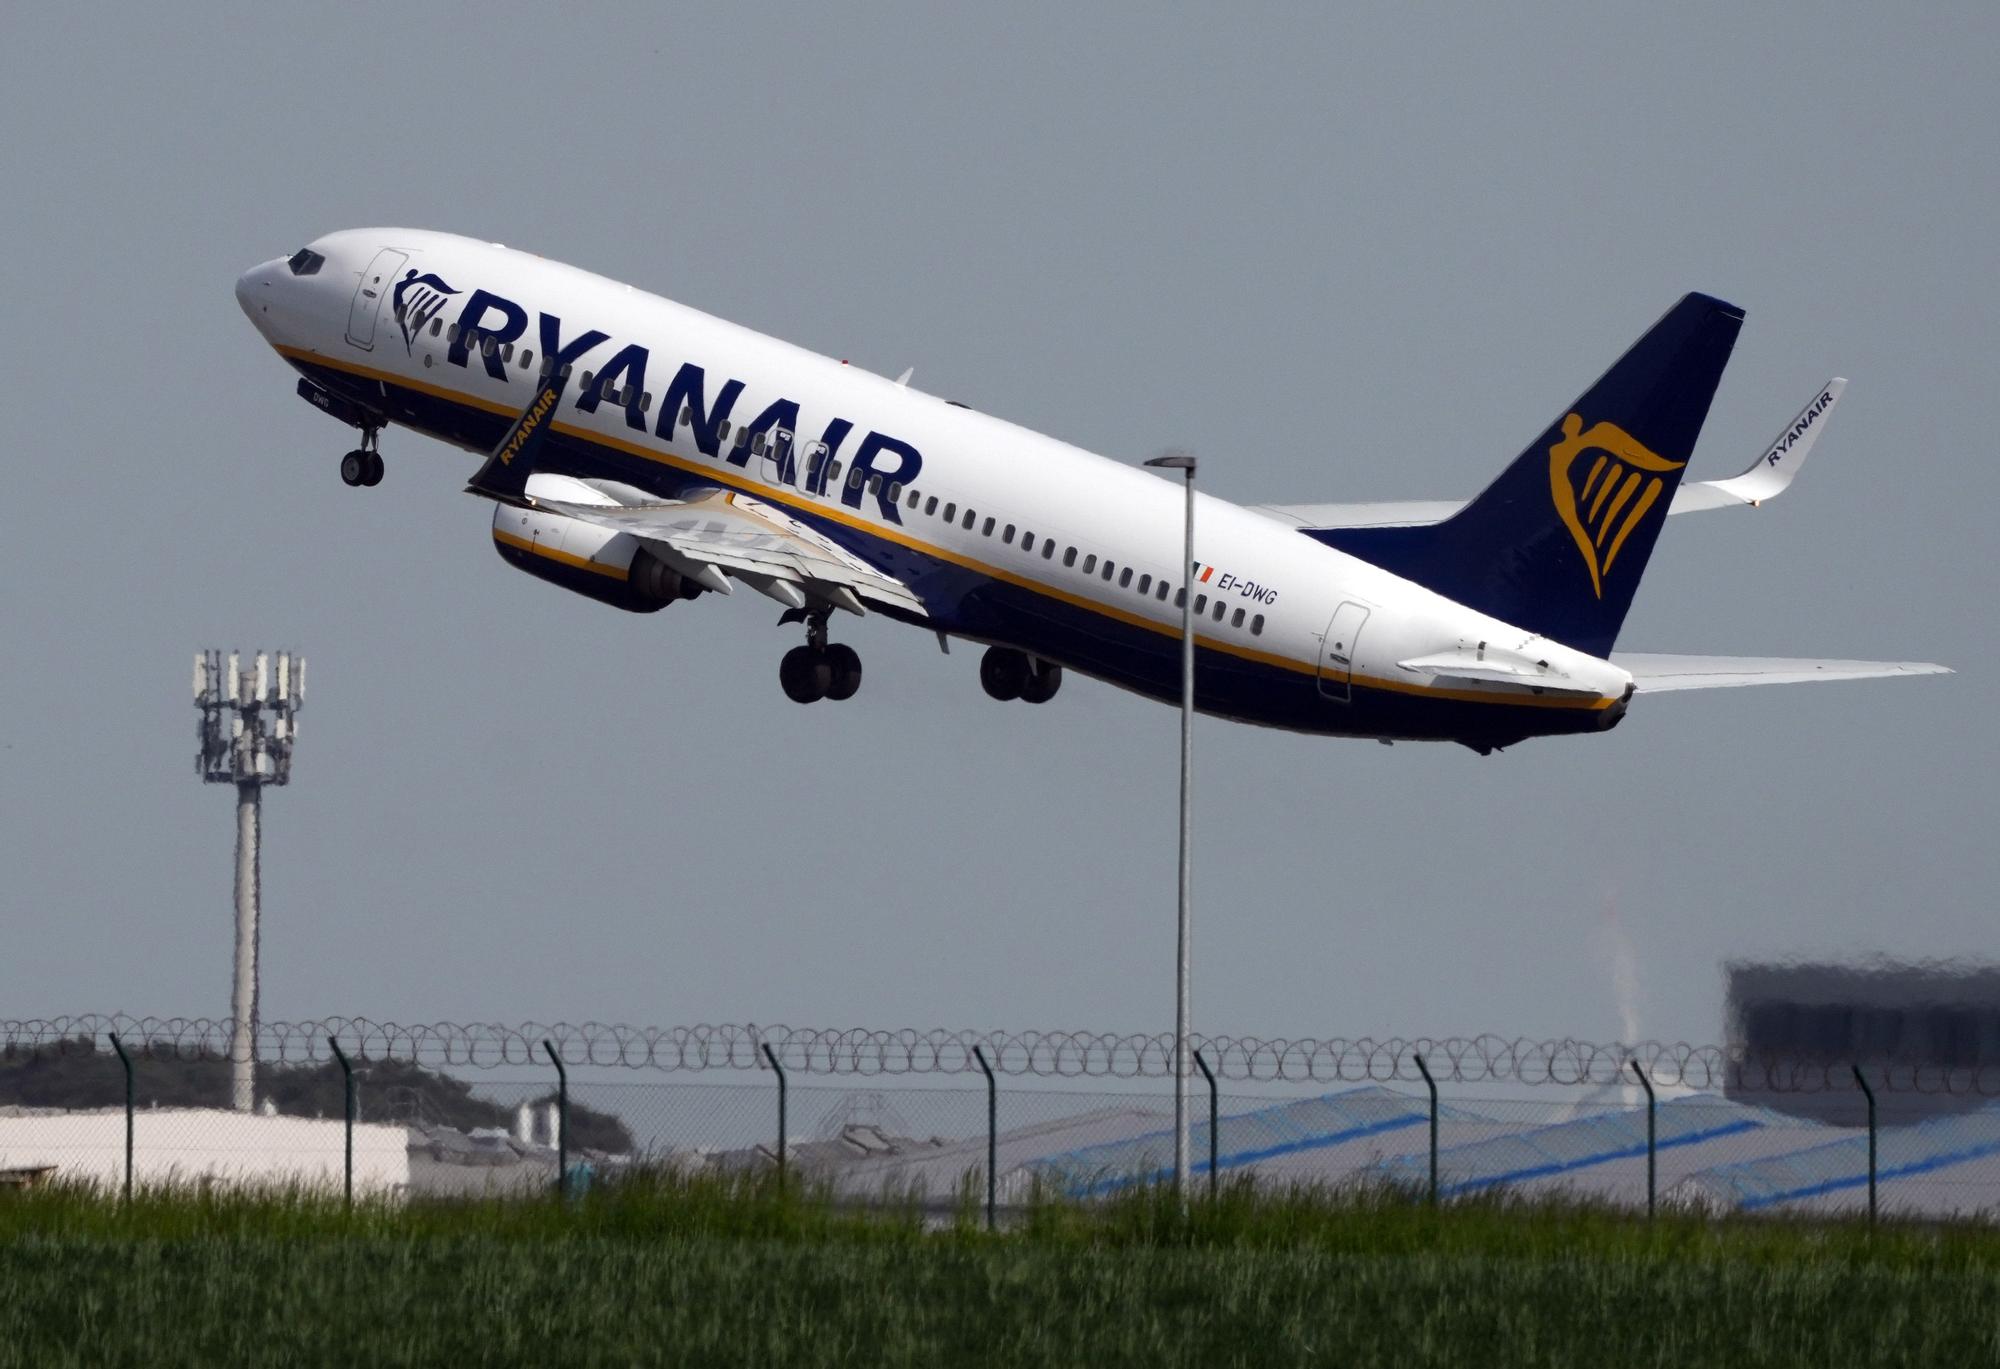 MEDIDAS EQUIPAJE MANO | Ryanair: estas son las nuevas medidas del equipaje  de mano que admite la compañía